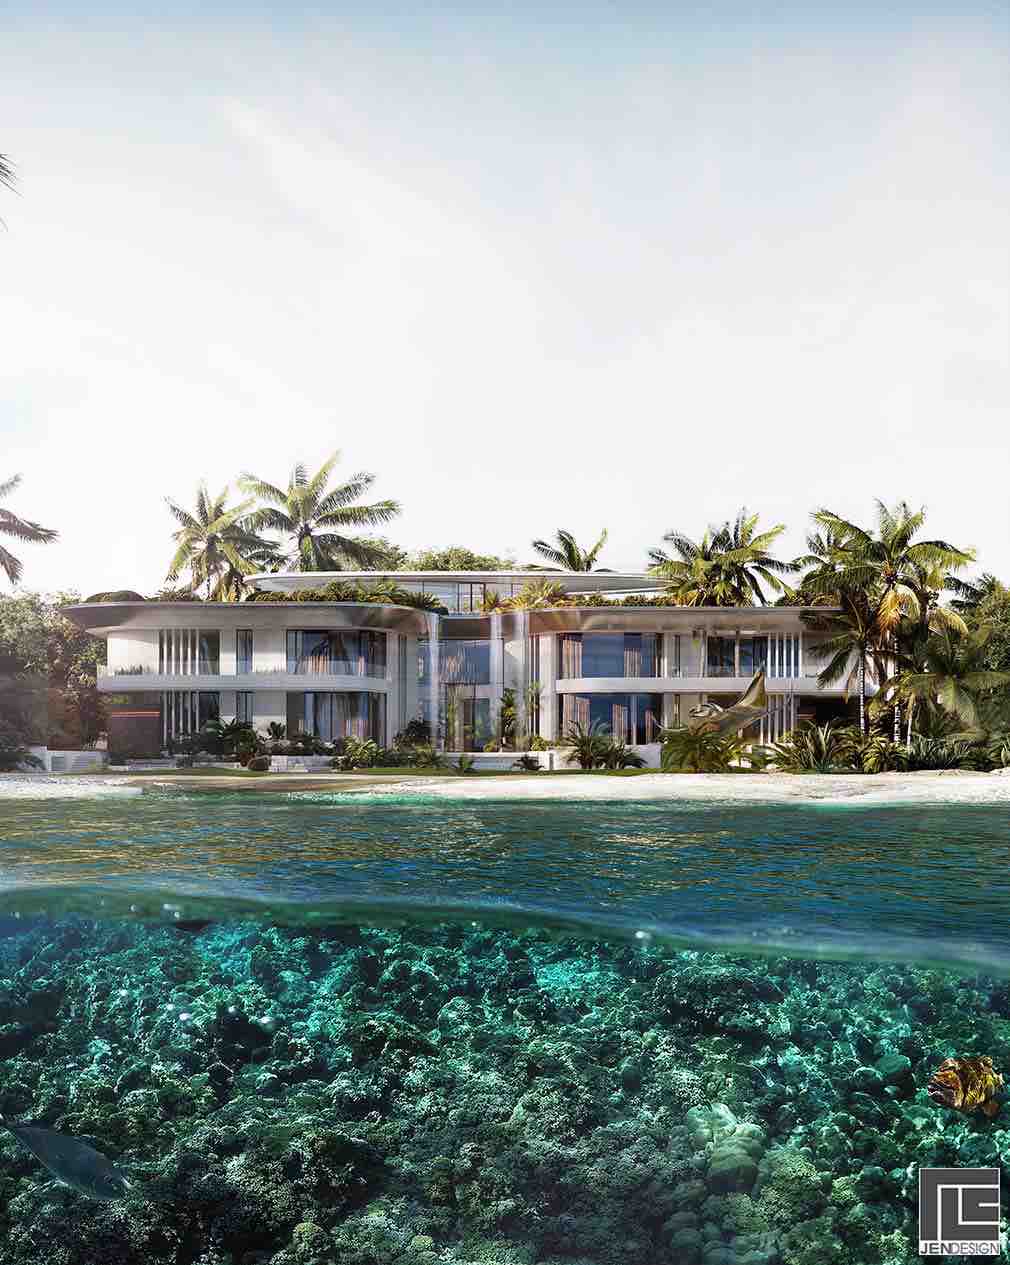 Villa Stingray nằm trên những hòn đảo dễ nhận biết nhất ở Dubai, chiếm 2 địa điểm trong một nhánh của quần đảo nhân tạo này